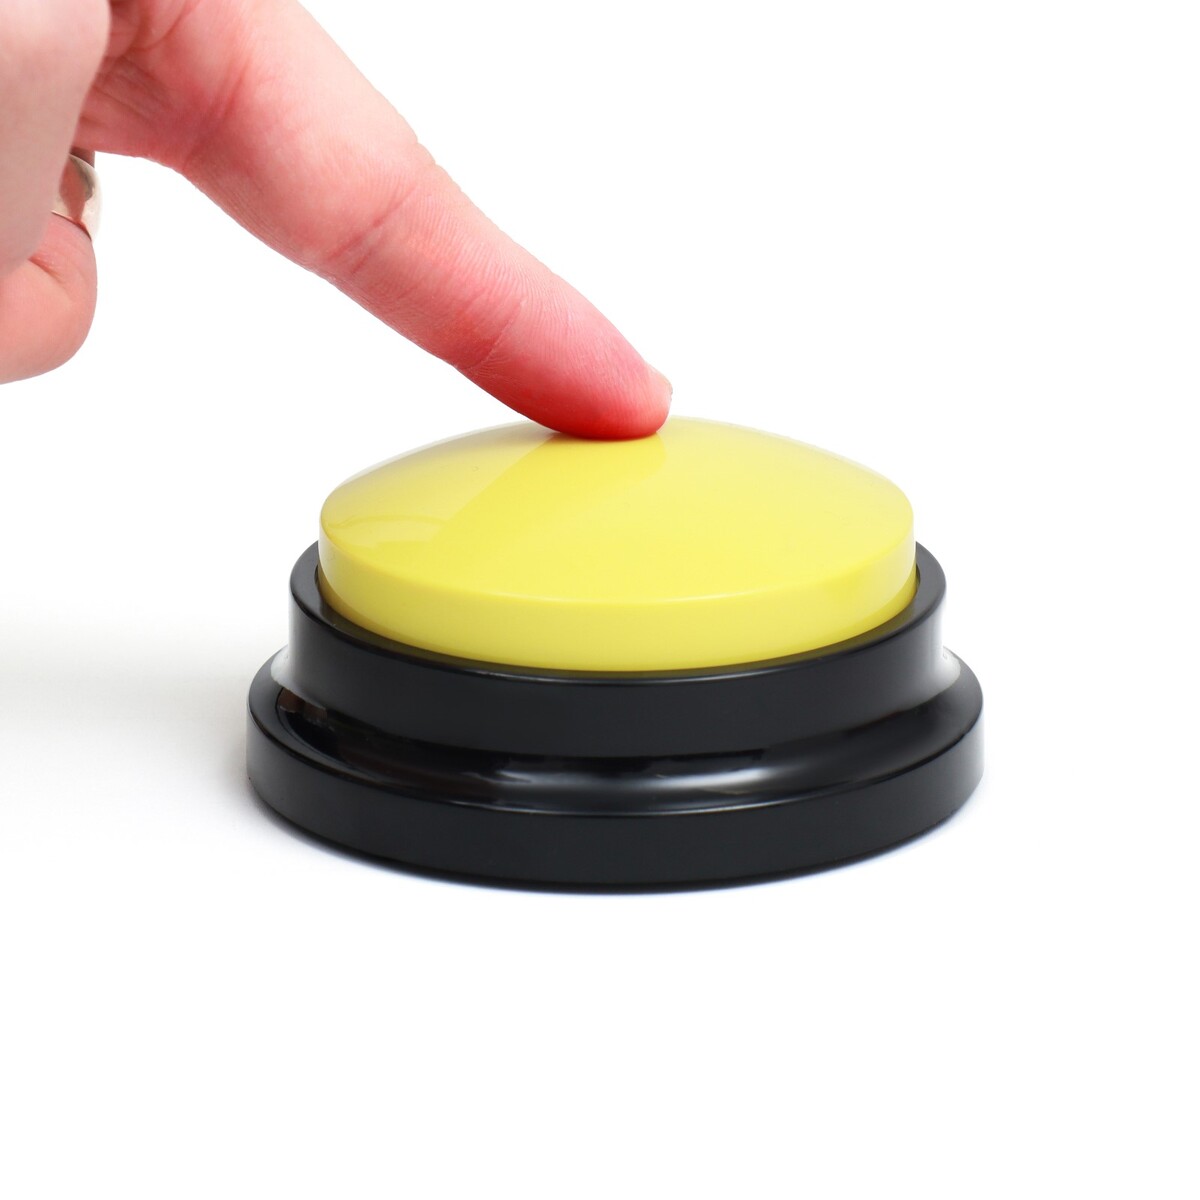 Звуковая кнопка - кликер для дрессировки животных, 9 х 9 х 5, см. желтая звуковая кнопка кликер для дрессировки животных 9 х 9 х 5 см желтая